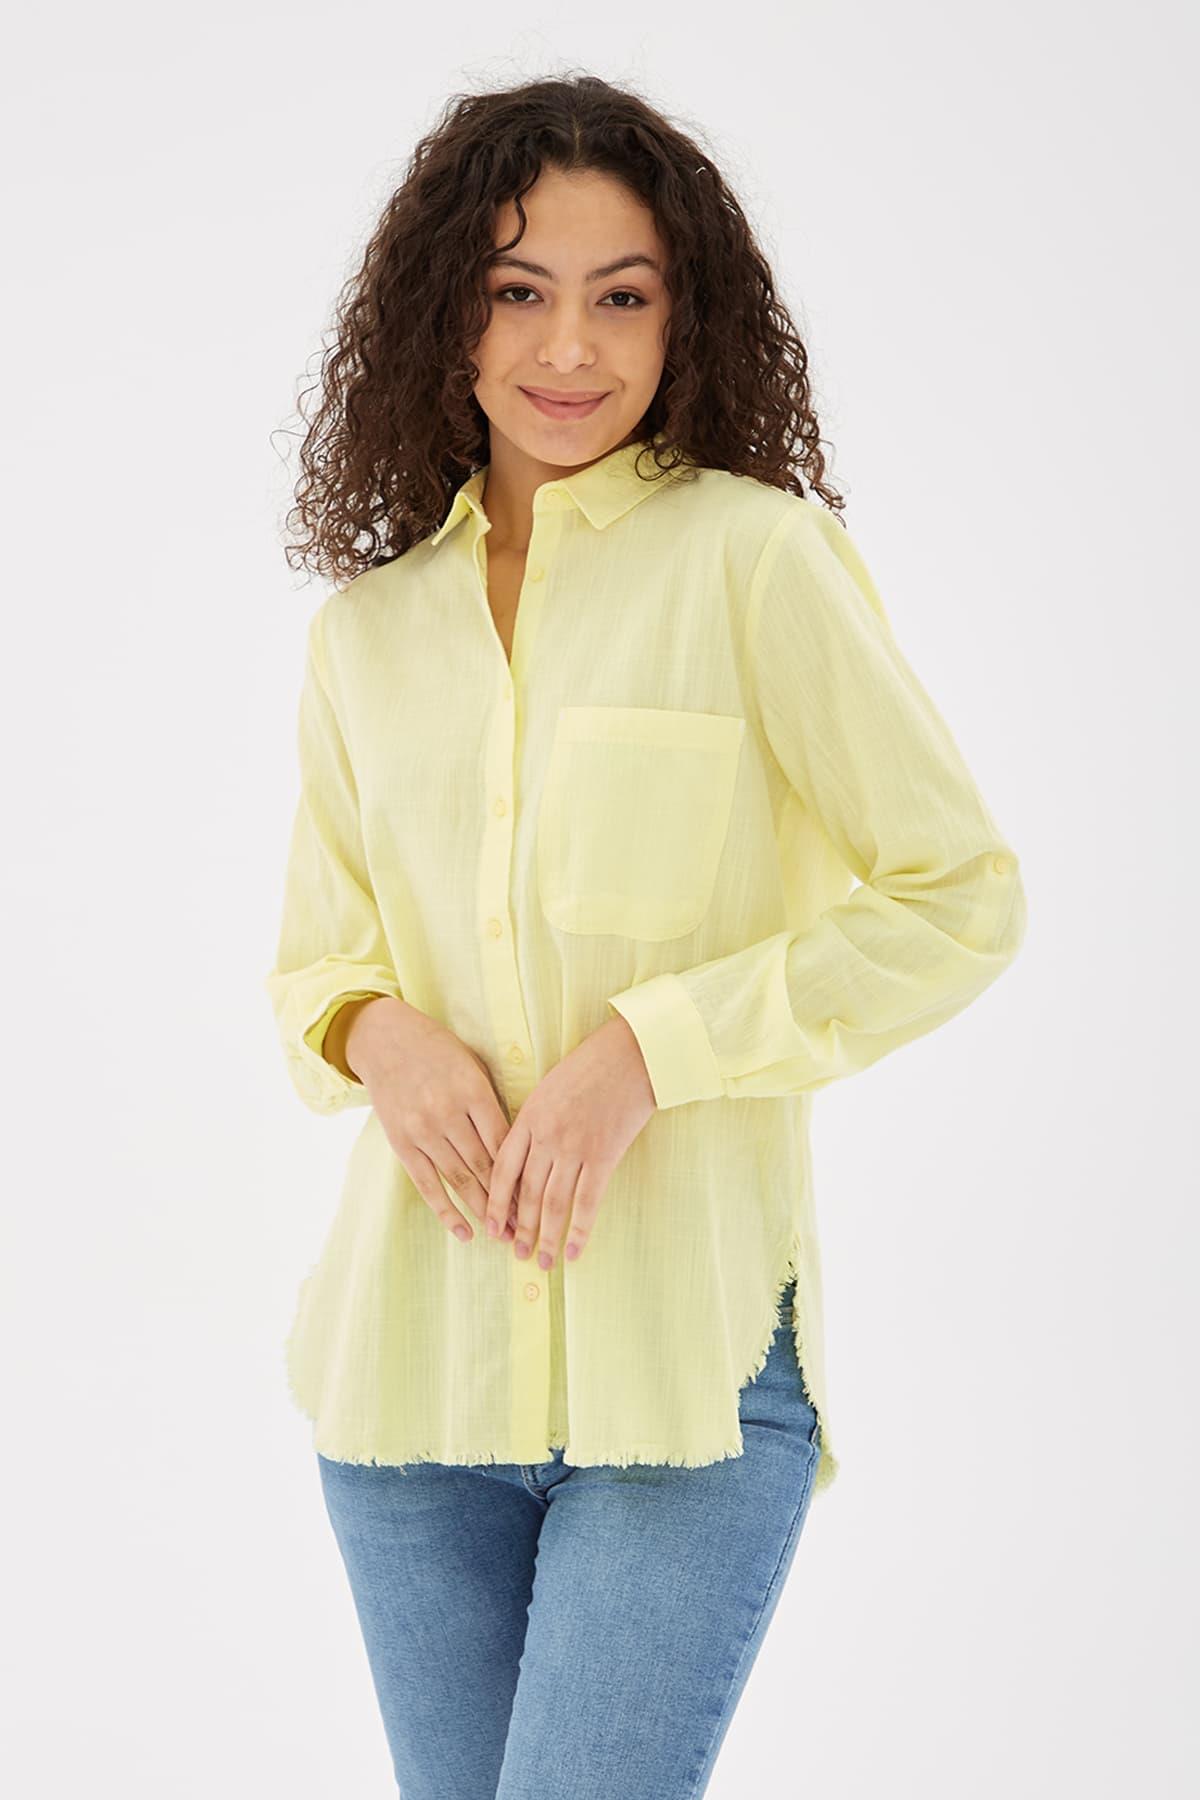 Etek Ucu Püsküllü Gömlek Sarı / Yellow | Fashionfriends